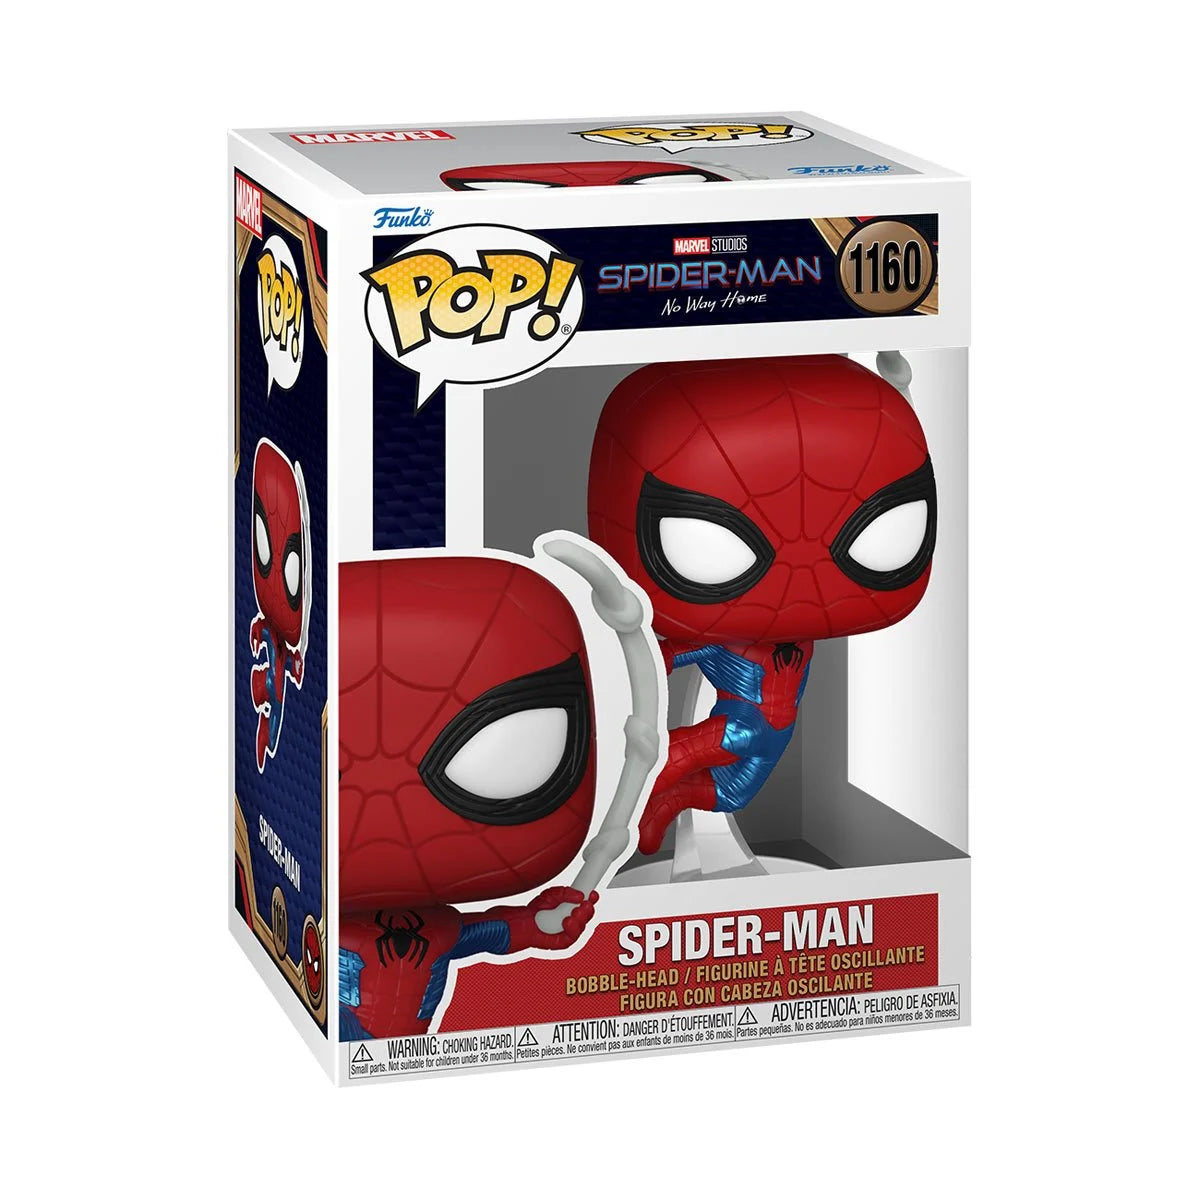 Spider-Man No Way Home Finale Suit Pop! Vinyl Figure